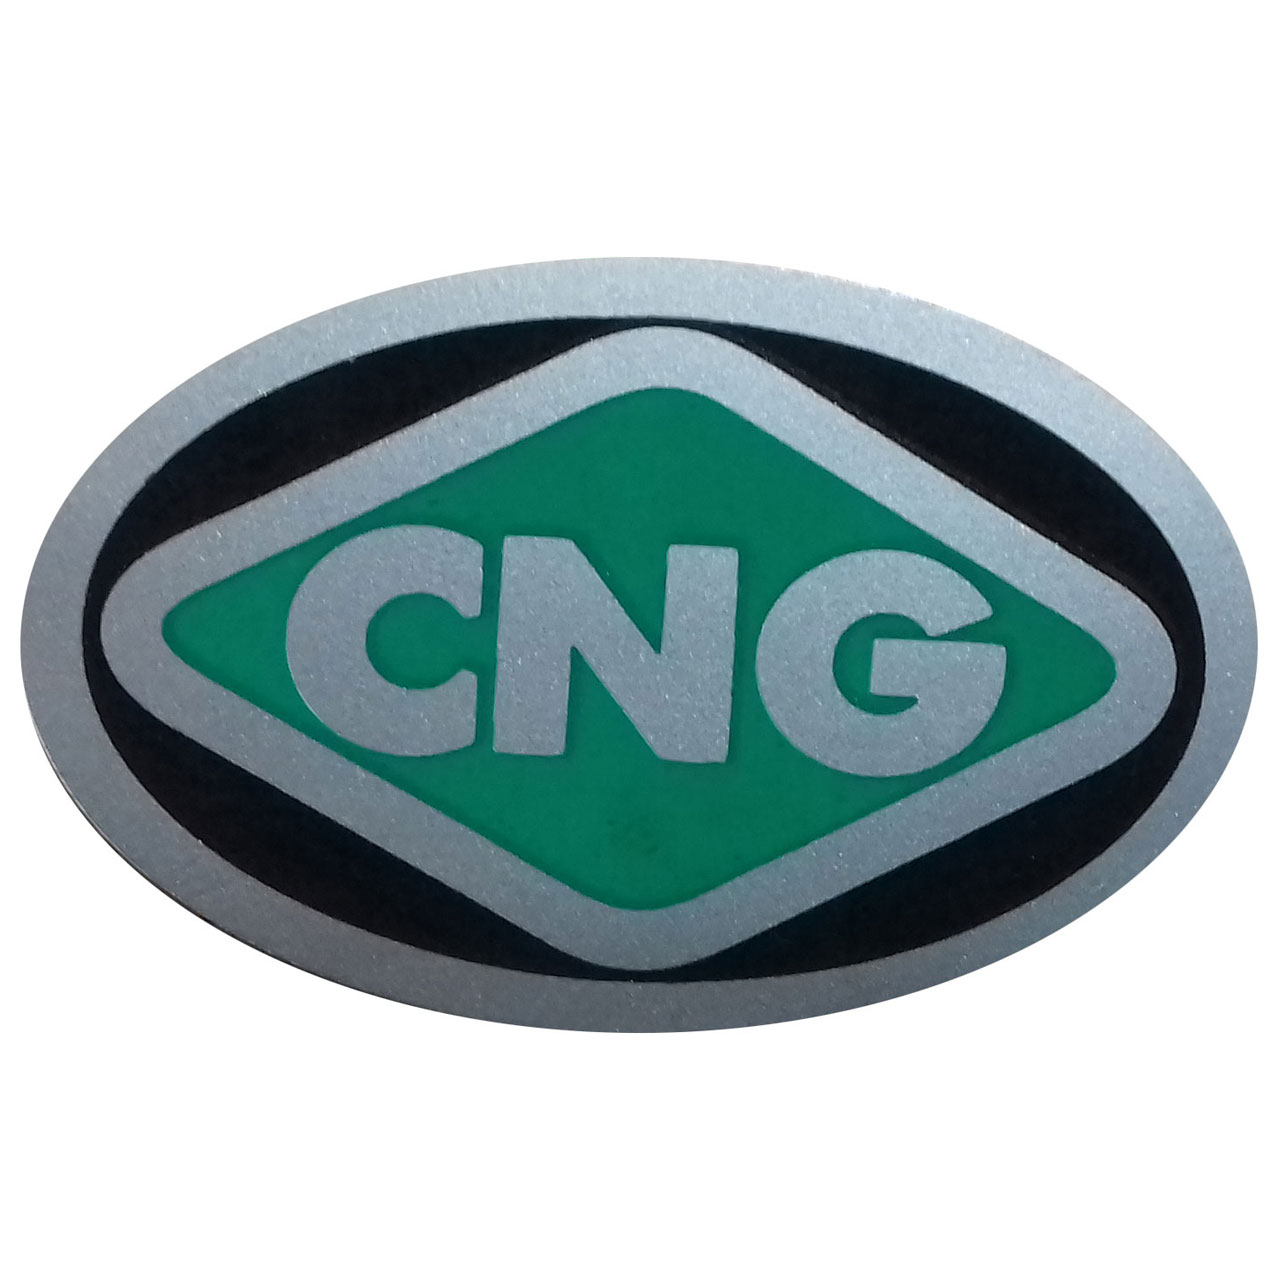 برچسب بدنه خودرو طرح CNG مدل BR8 بسته 2 عددی